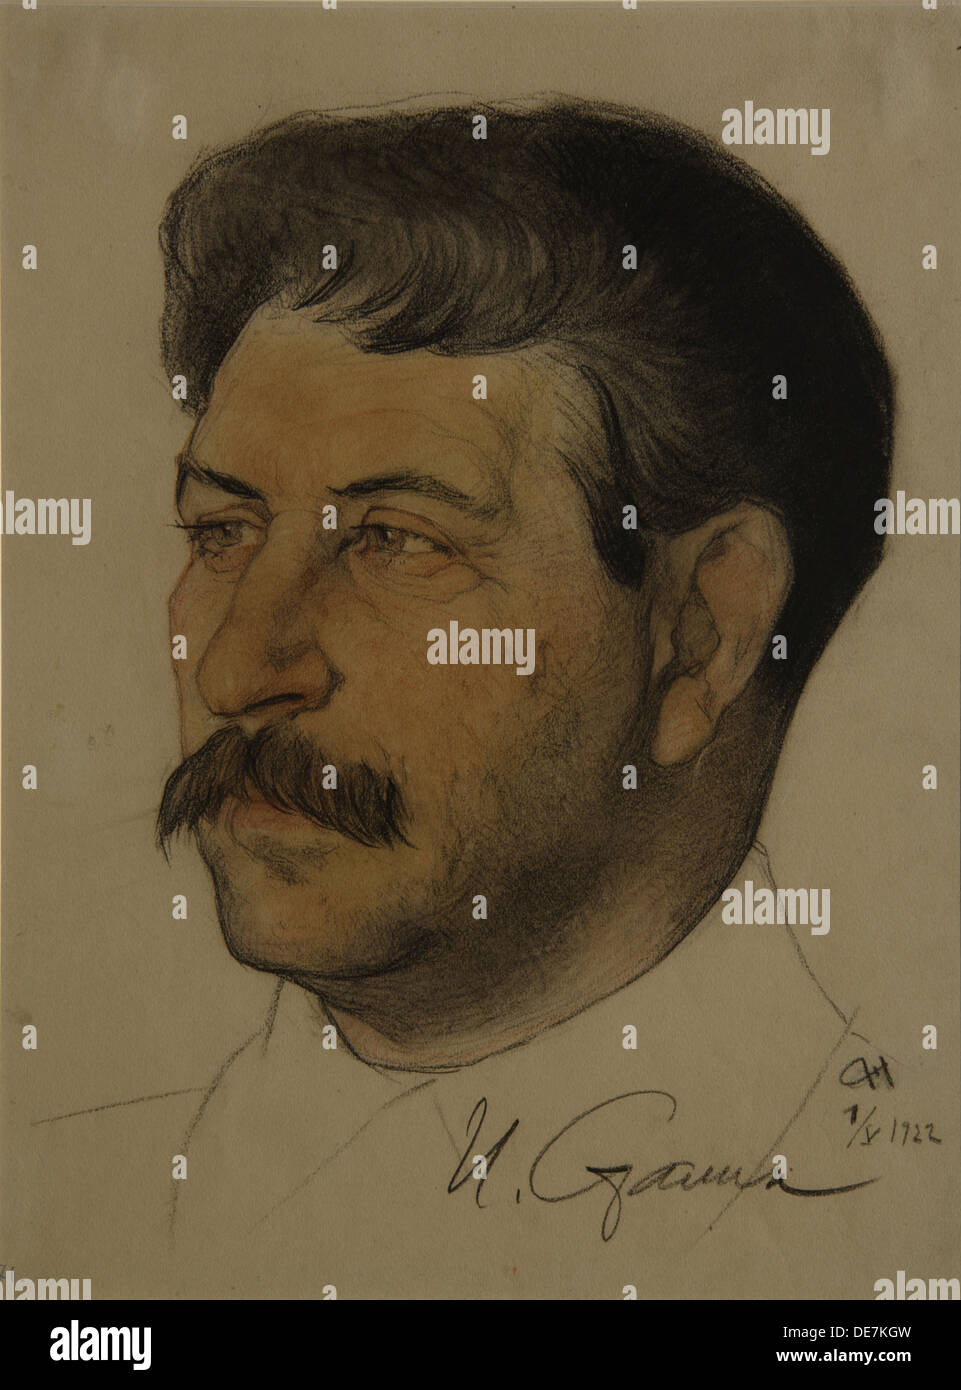 Ritratto di Joseph Stalin (1879-1953), 1922. Artista: Andreev, Nikolai Andreevich (1873-1932) Foto Stock